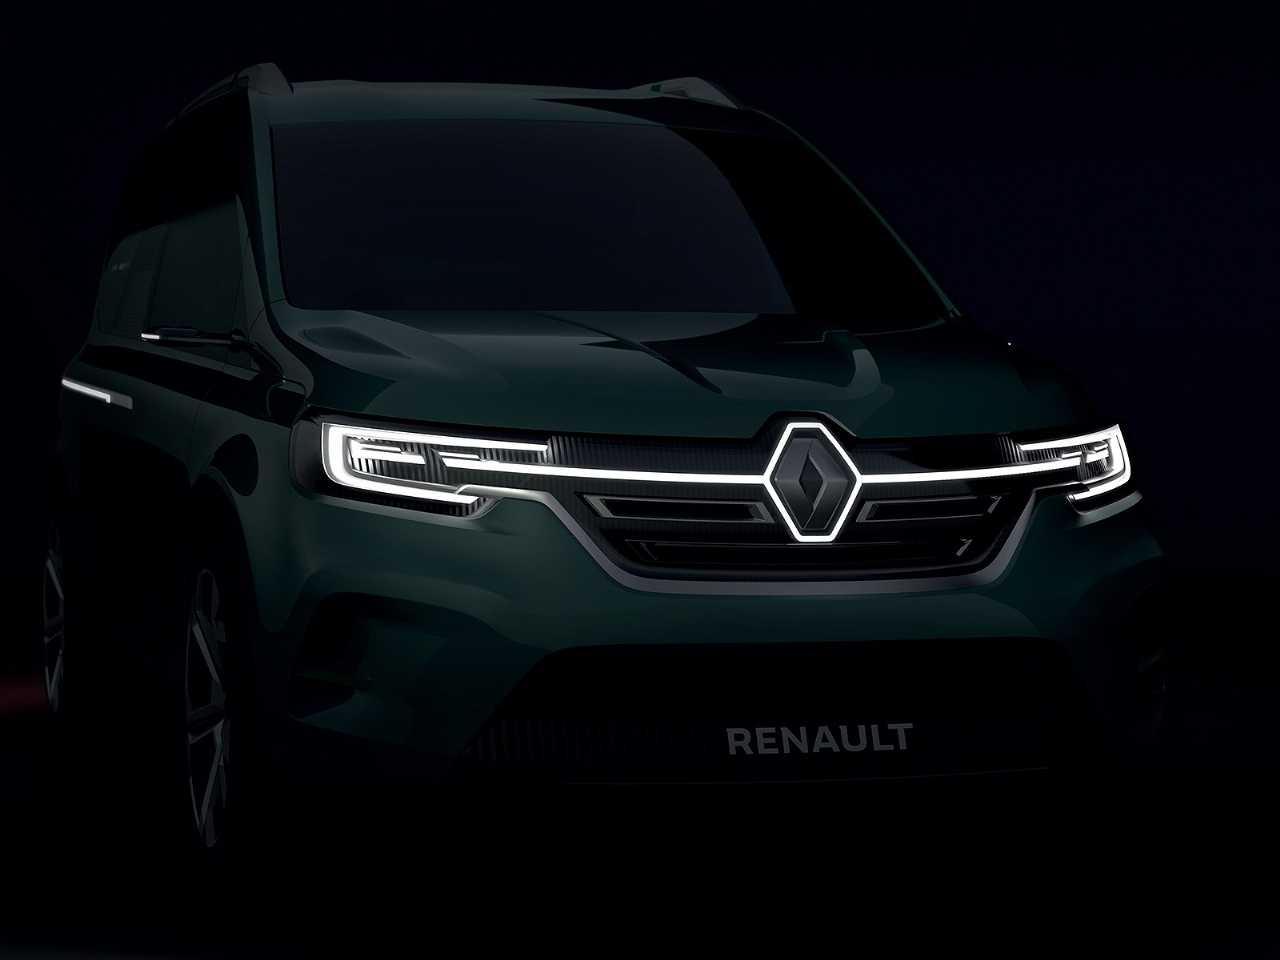 Conselho administrativo da Renault decide seguir nas negociaes com a FCA